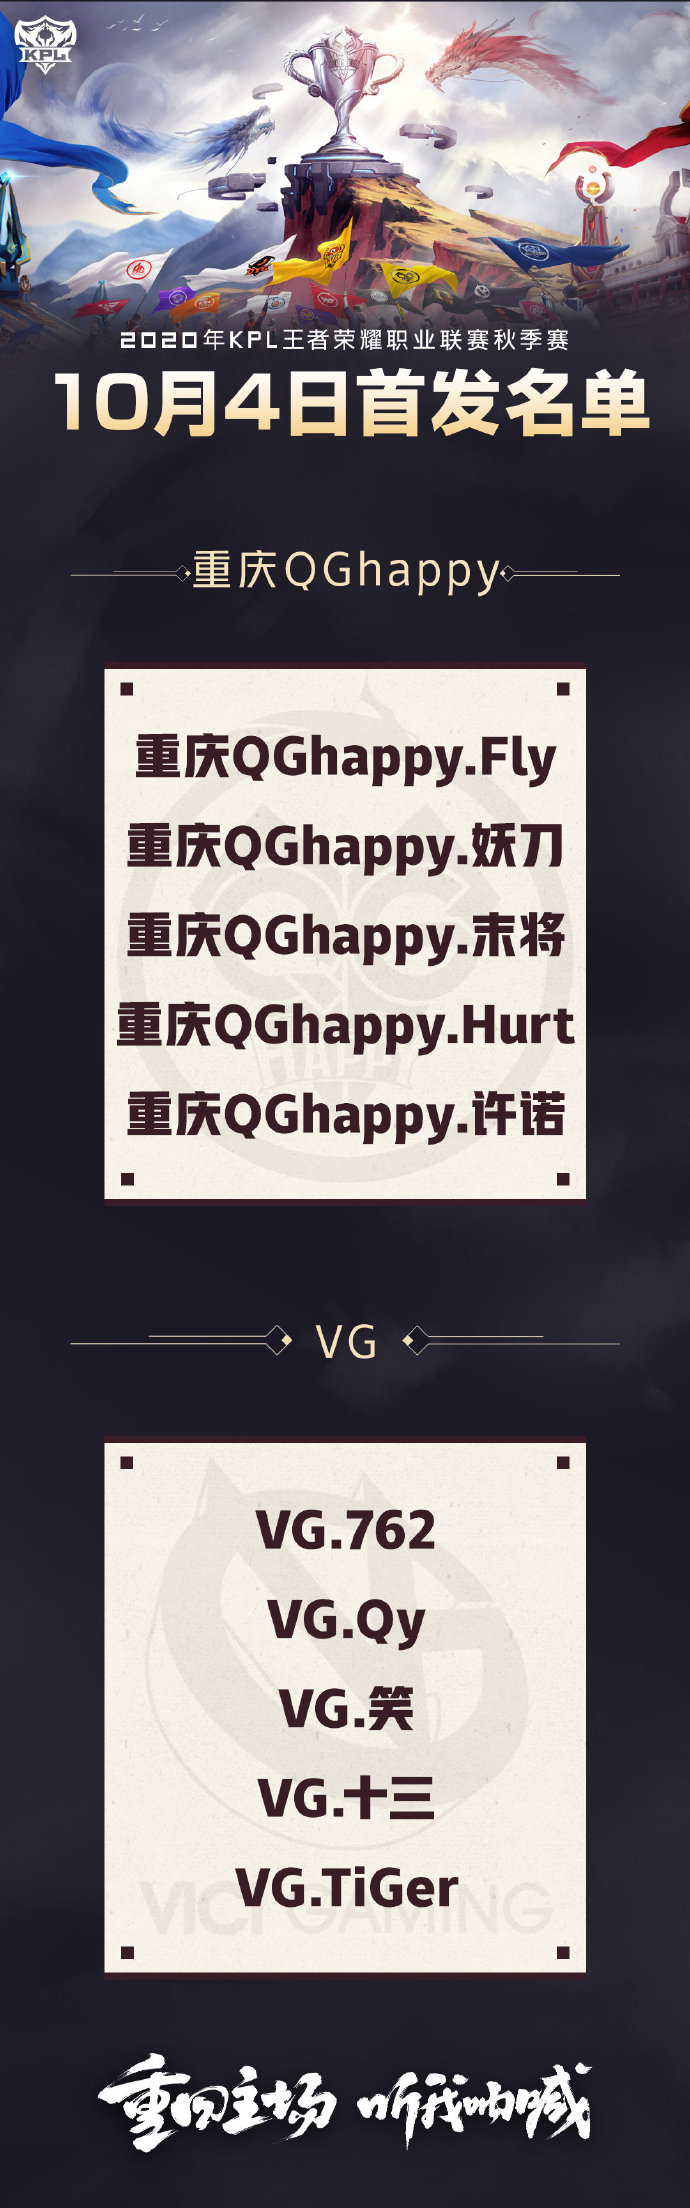 [今日首发] 成都AG麟羽轩轮换登场 重庆QGhappy大战VG